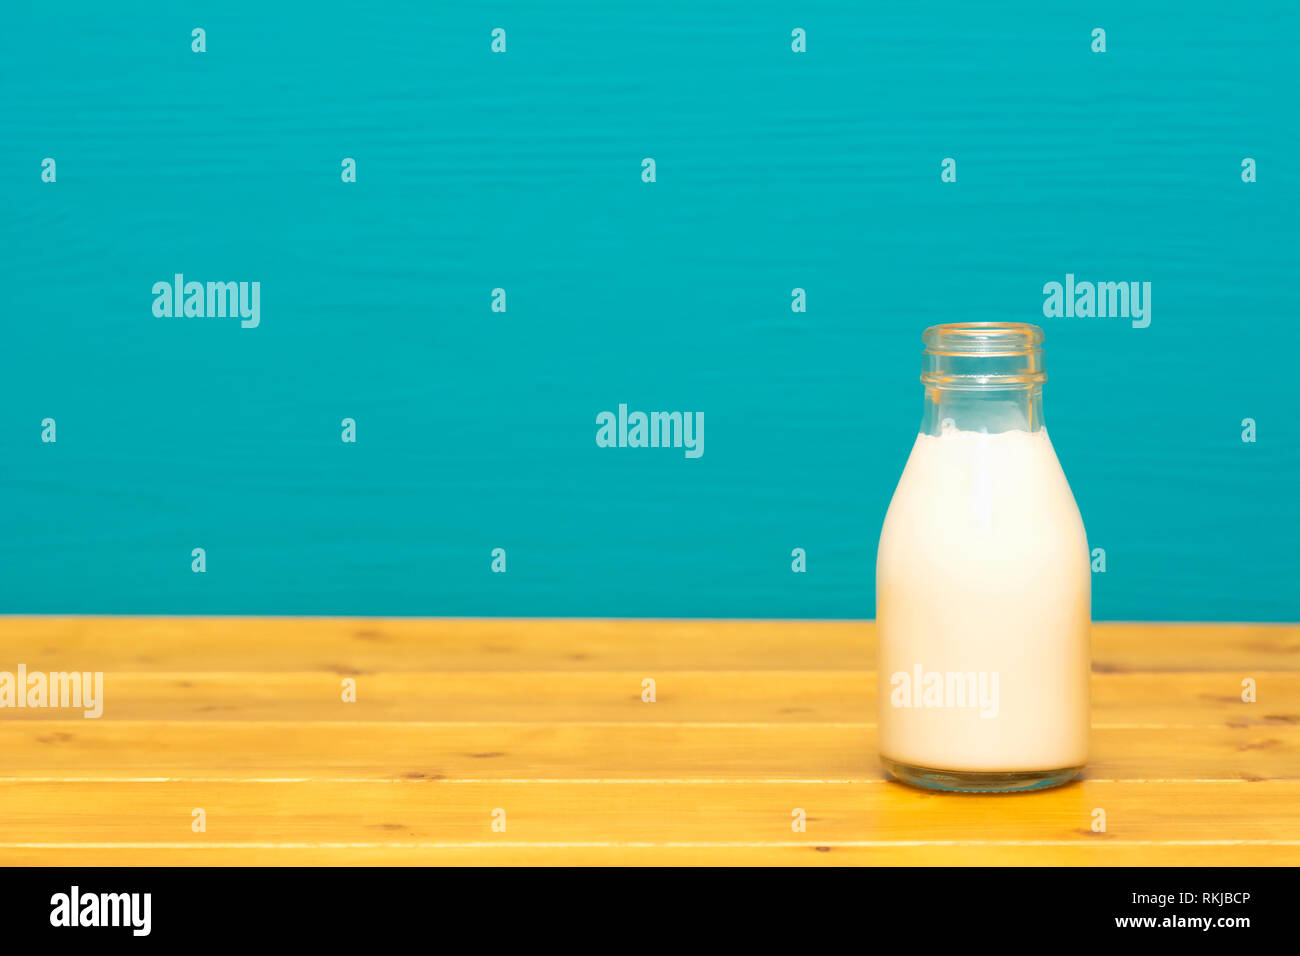 Lait Crème fraîche dans un tiers de pinte de lait, bouteille en verre sur une table en bois contre un arrière-plan peint sarcelles lumineux Banque D'Images